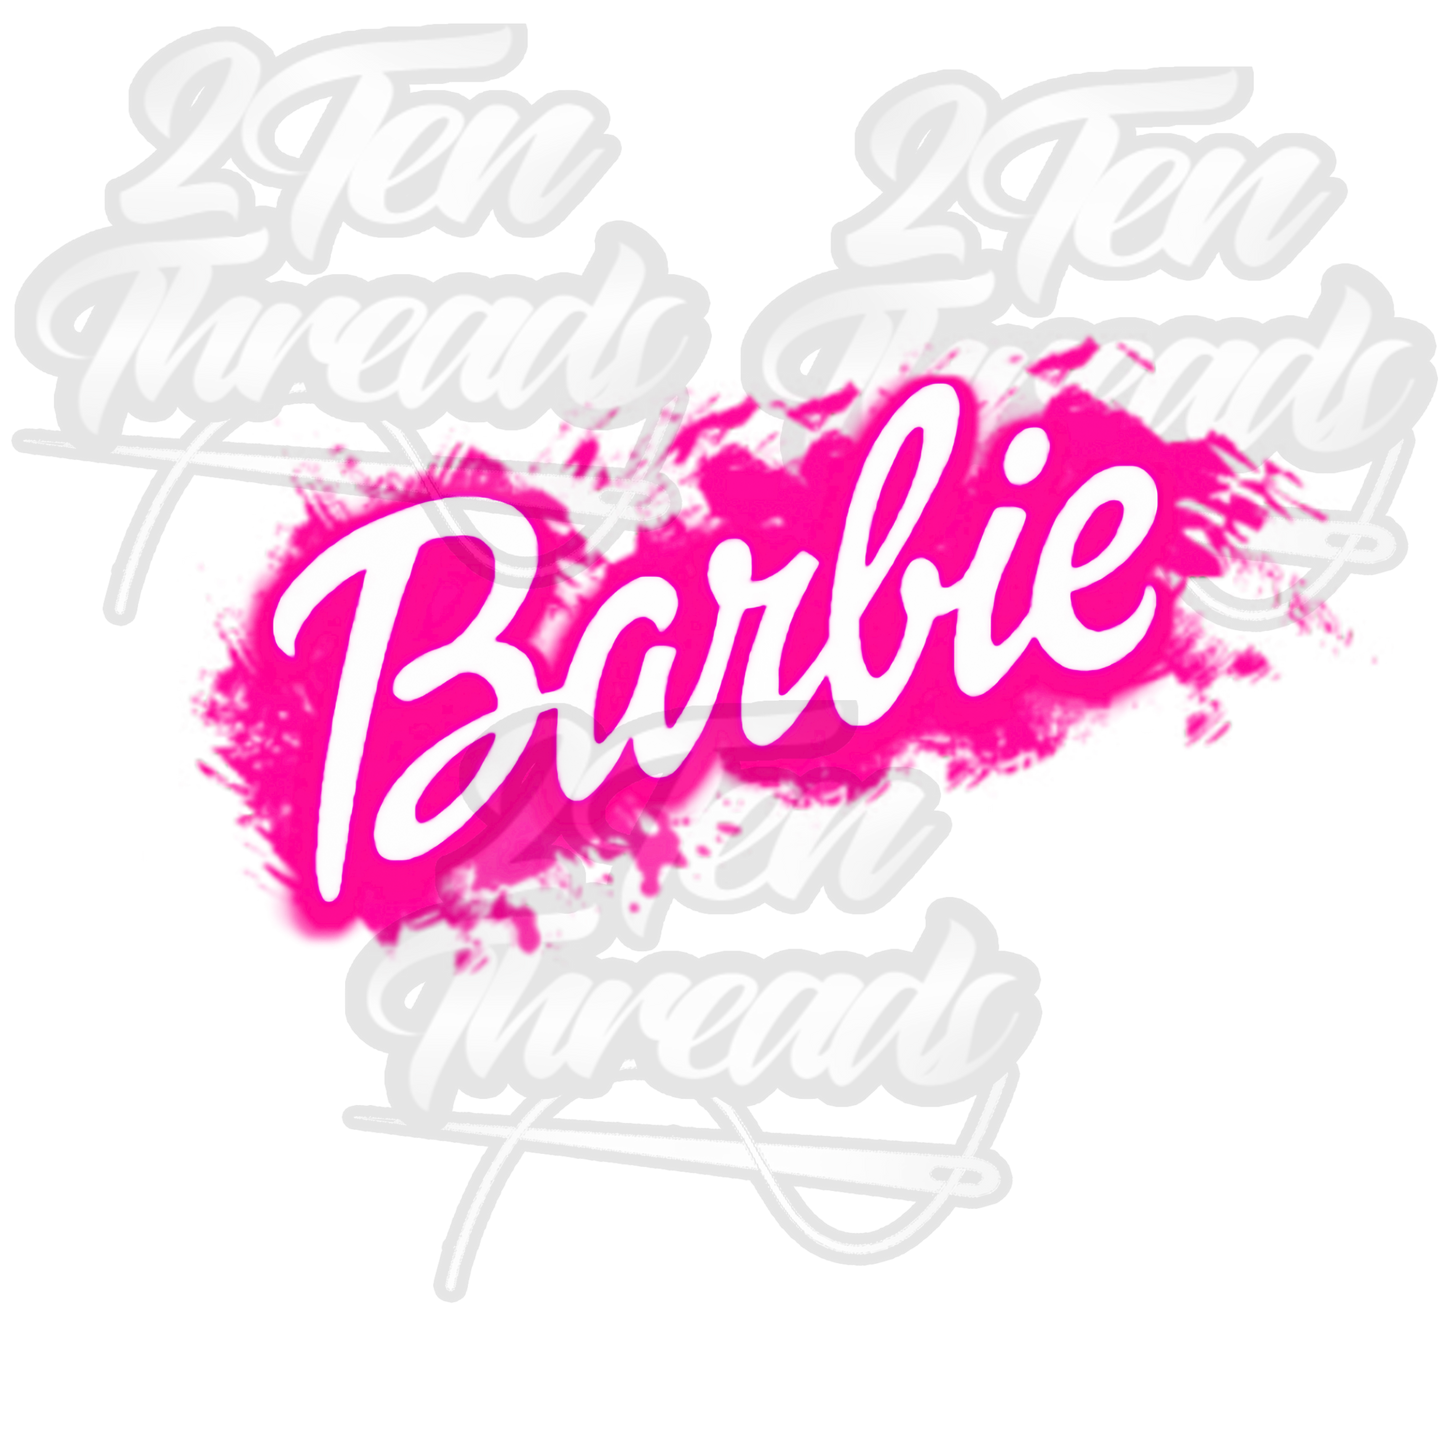 Barbie T-Shirt Custom Made!